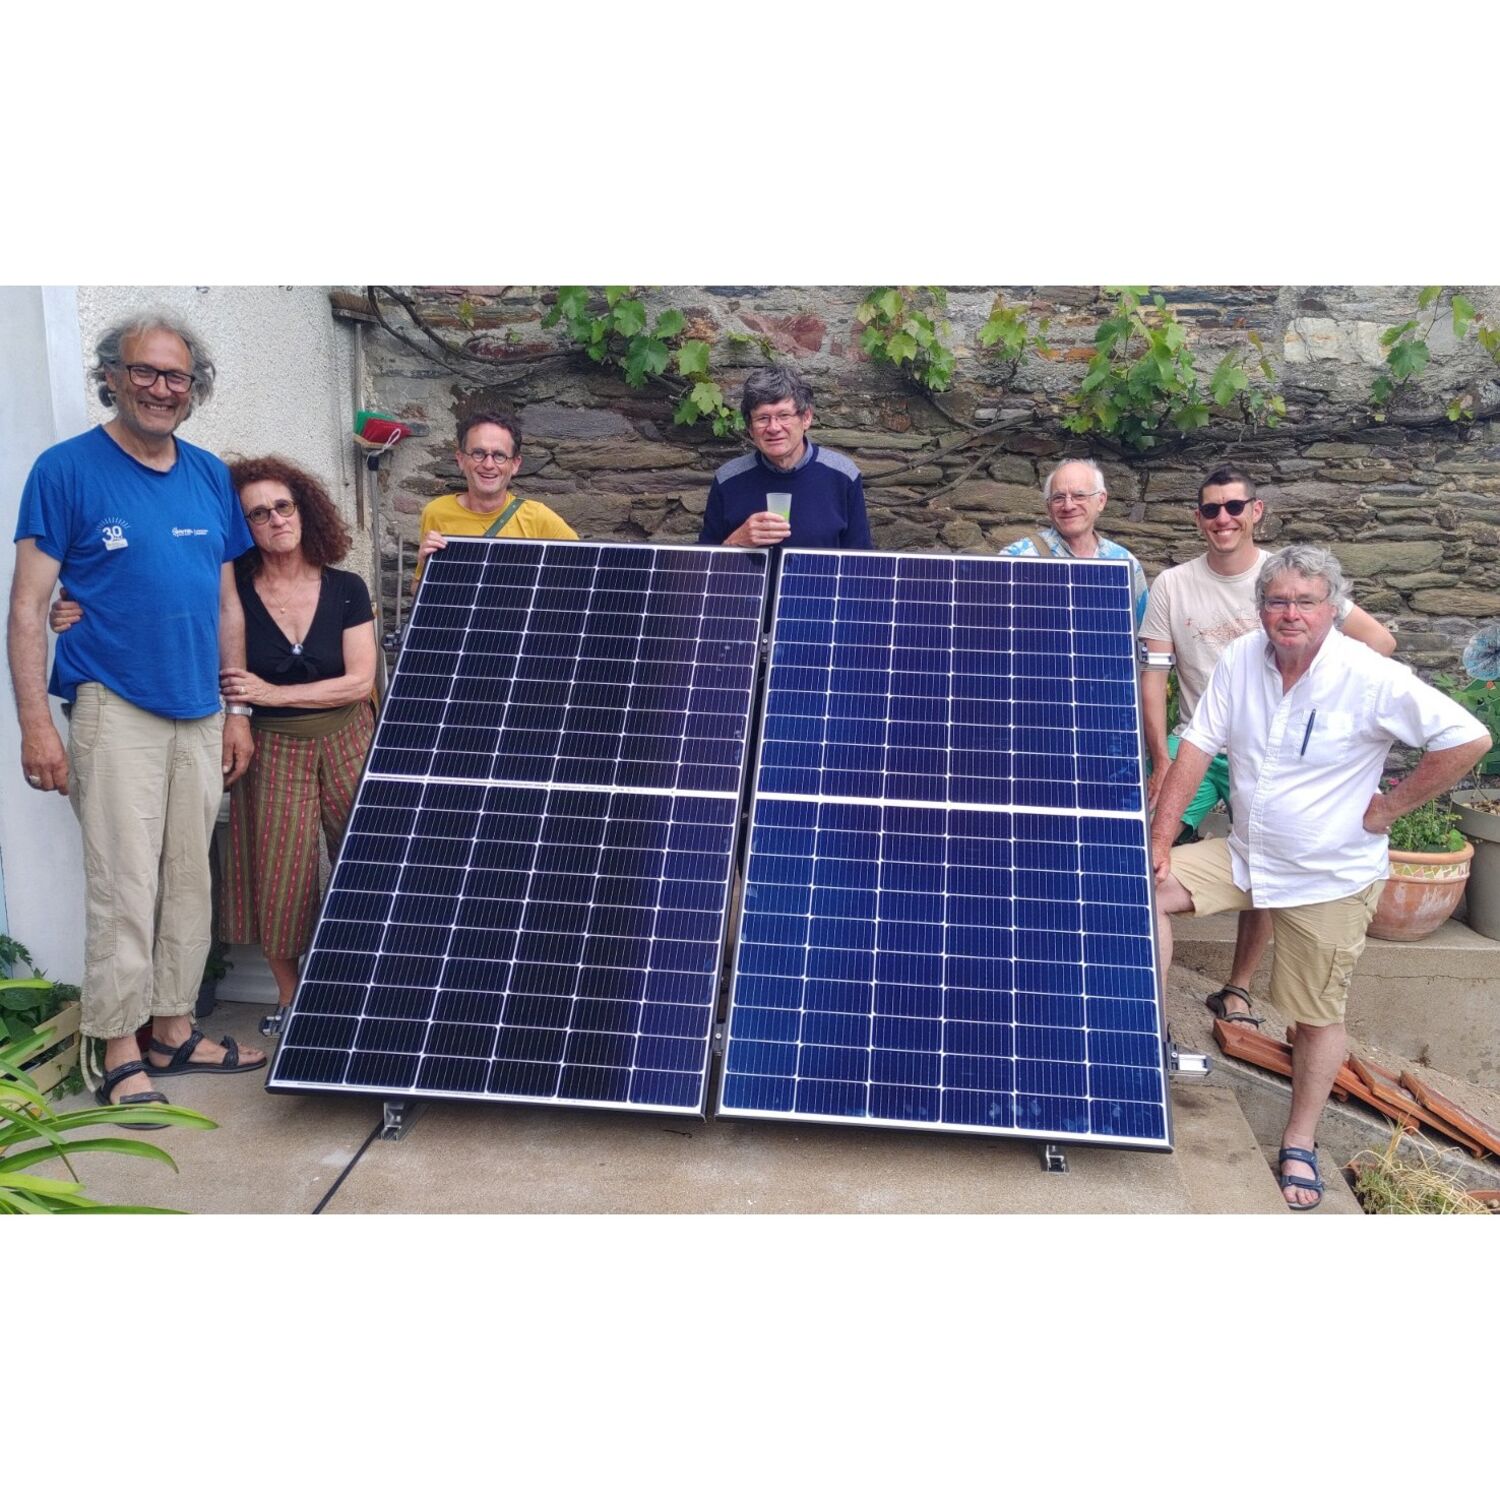 À Redon : un kit solaire pour faire baisser sa facture électrique